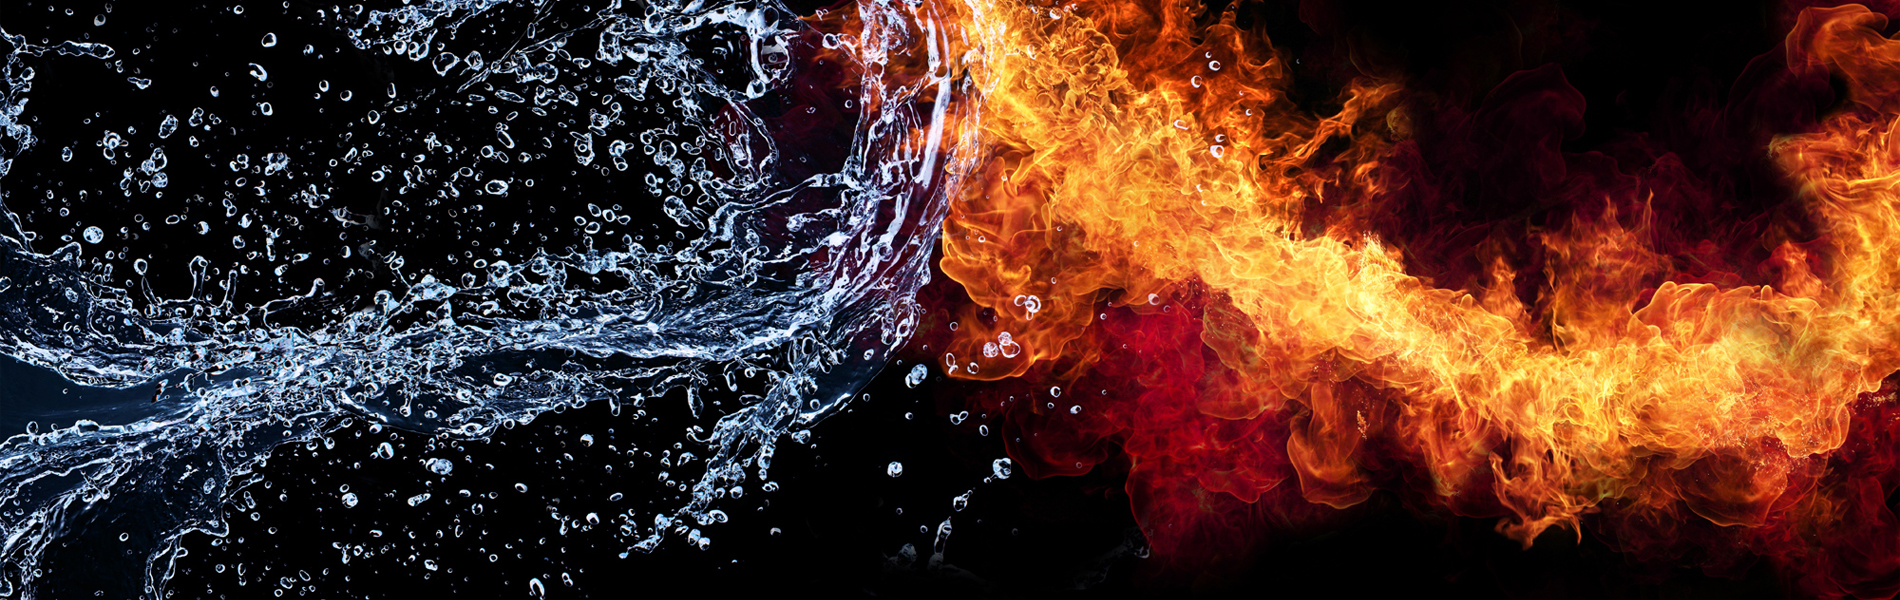 Огонь и вода на прозрачном фоне